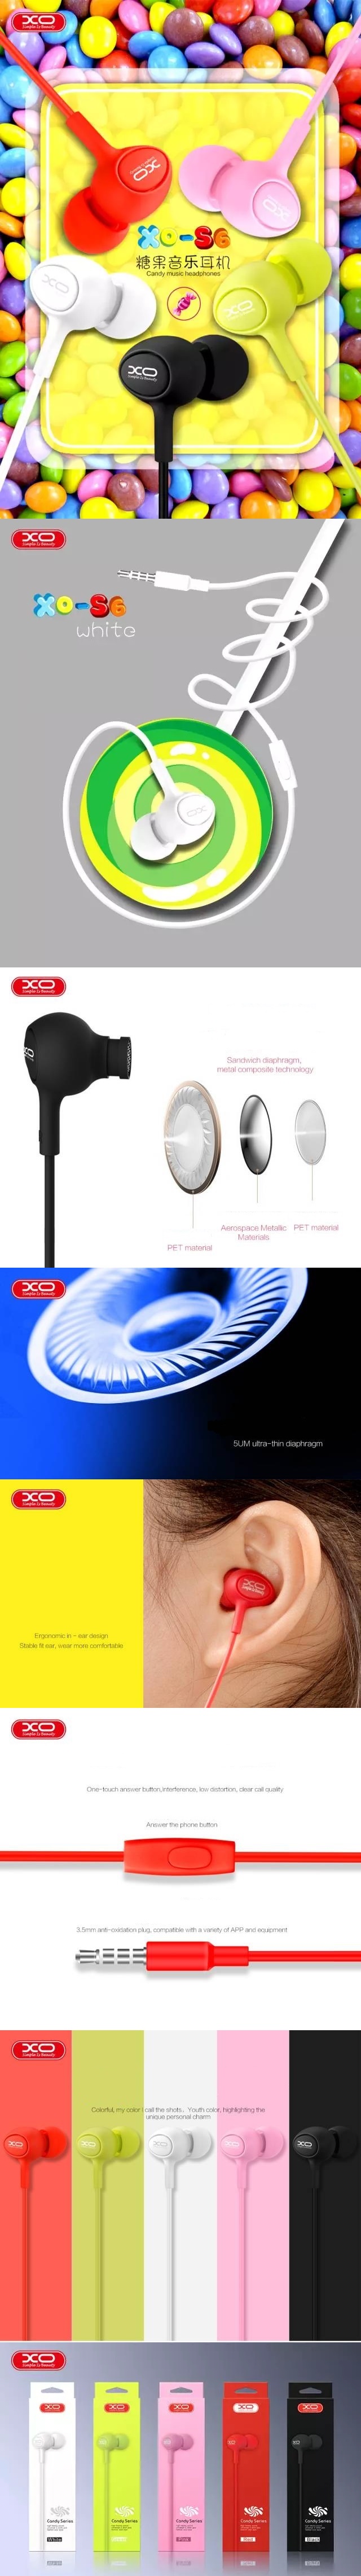 XO vezetékes fejhallgató S6 jack 3,5 mm-es fülbe helyezhető fehér